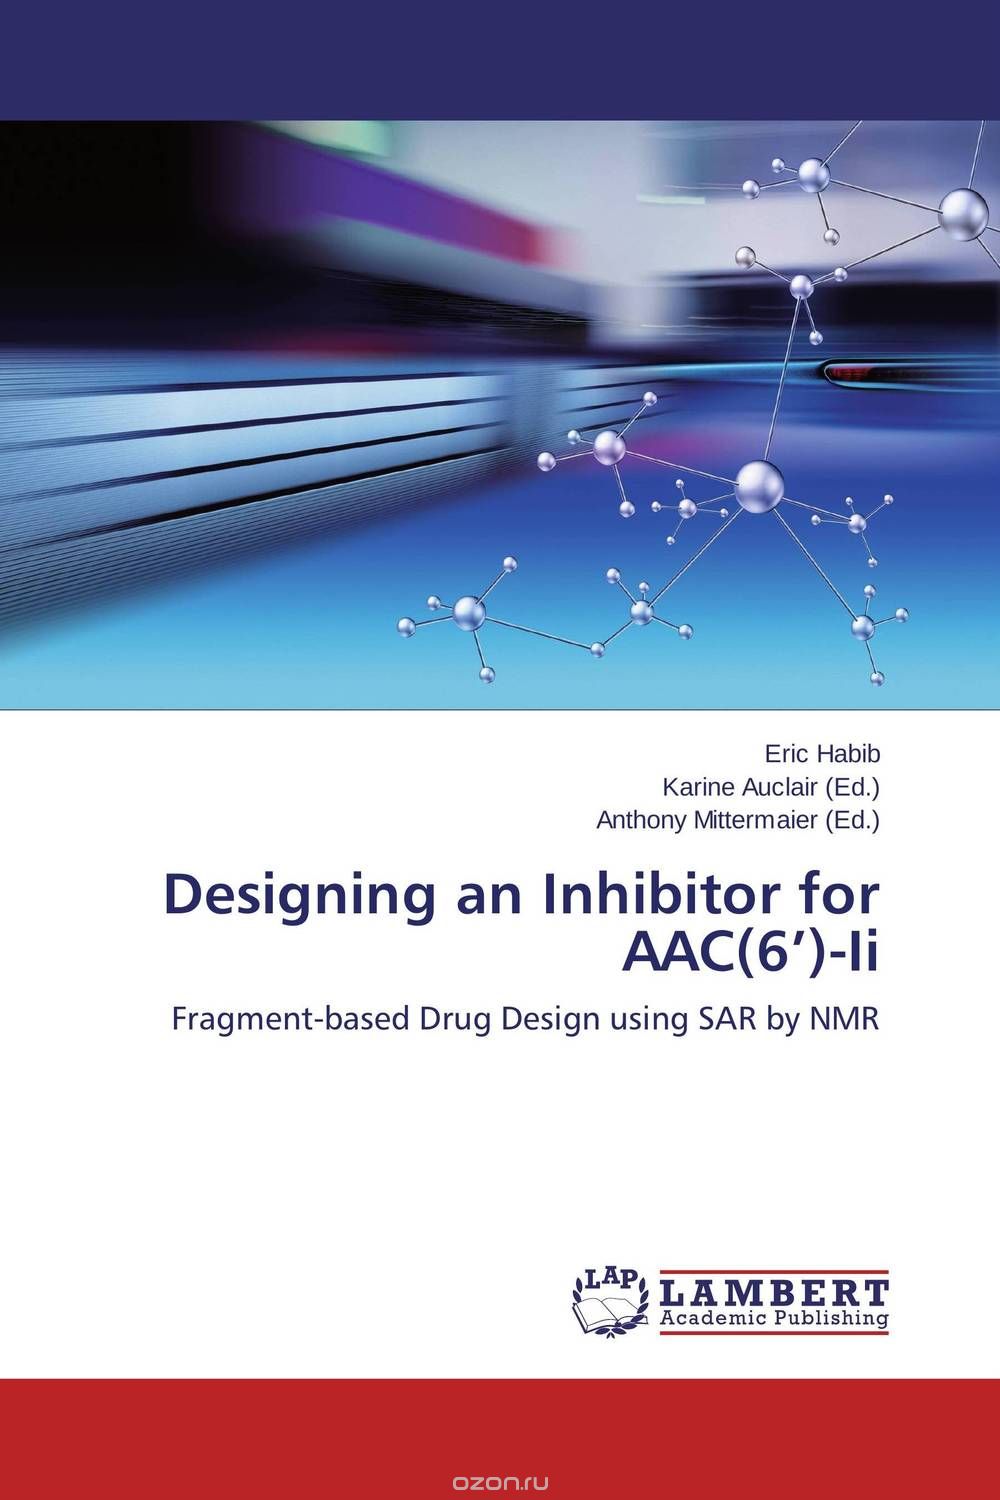 Скачать книгу "Designing an Inhibitor for AAC(6’)-Ii"